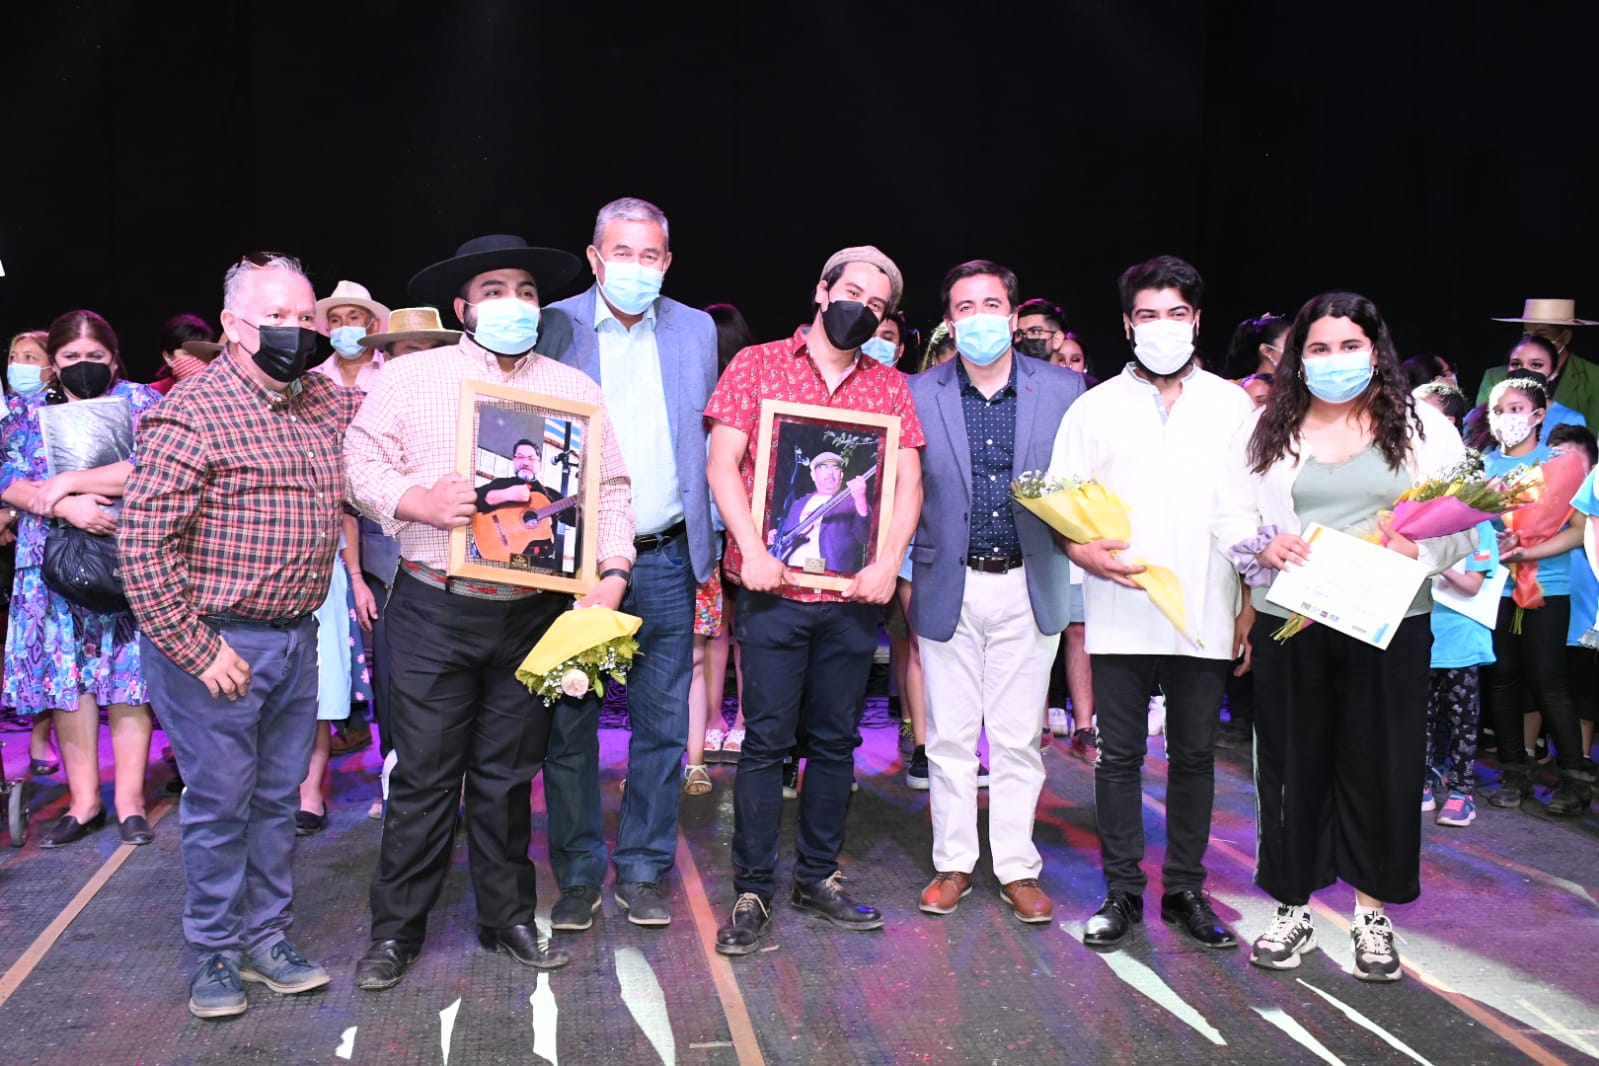 CULTURA: Artistas andinos se reunieron en colorido homenaje a músicos Pedro Rodríguez González y Víctor Acevedo Díaz